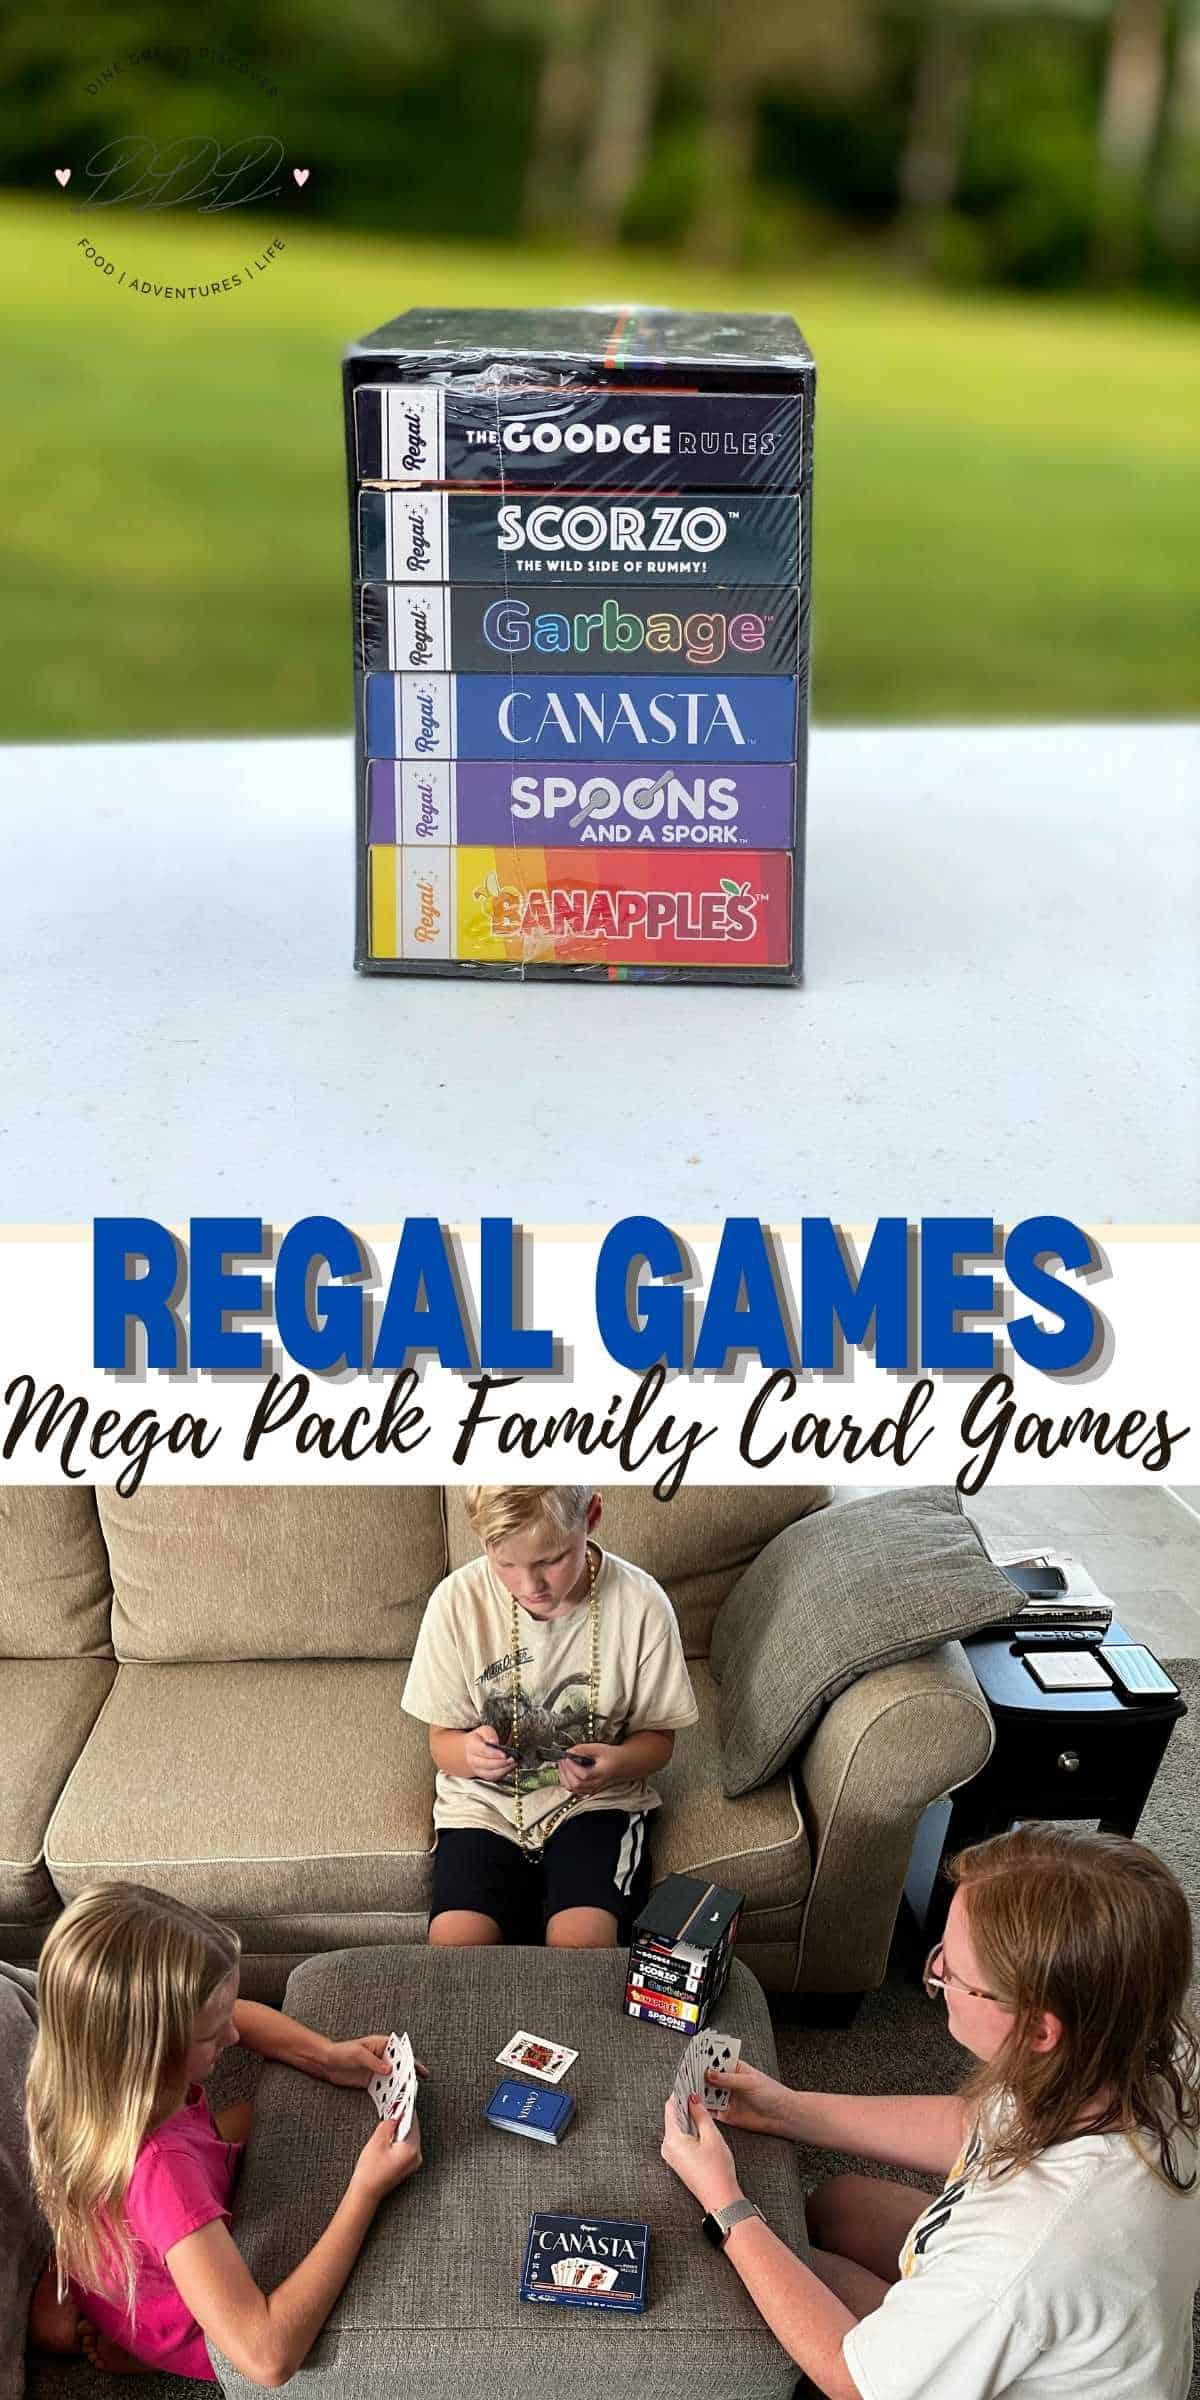 Regal Games Mega Pack Family Card Games